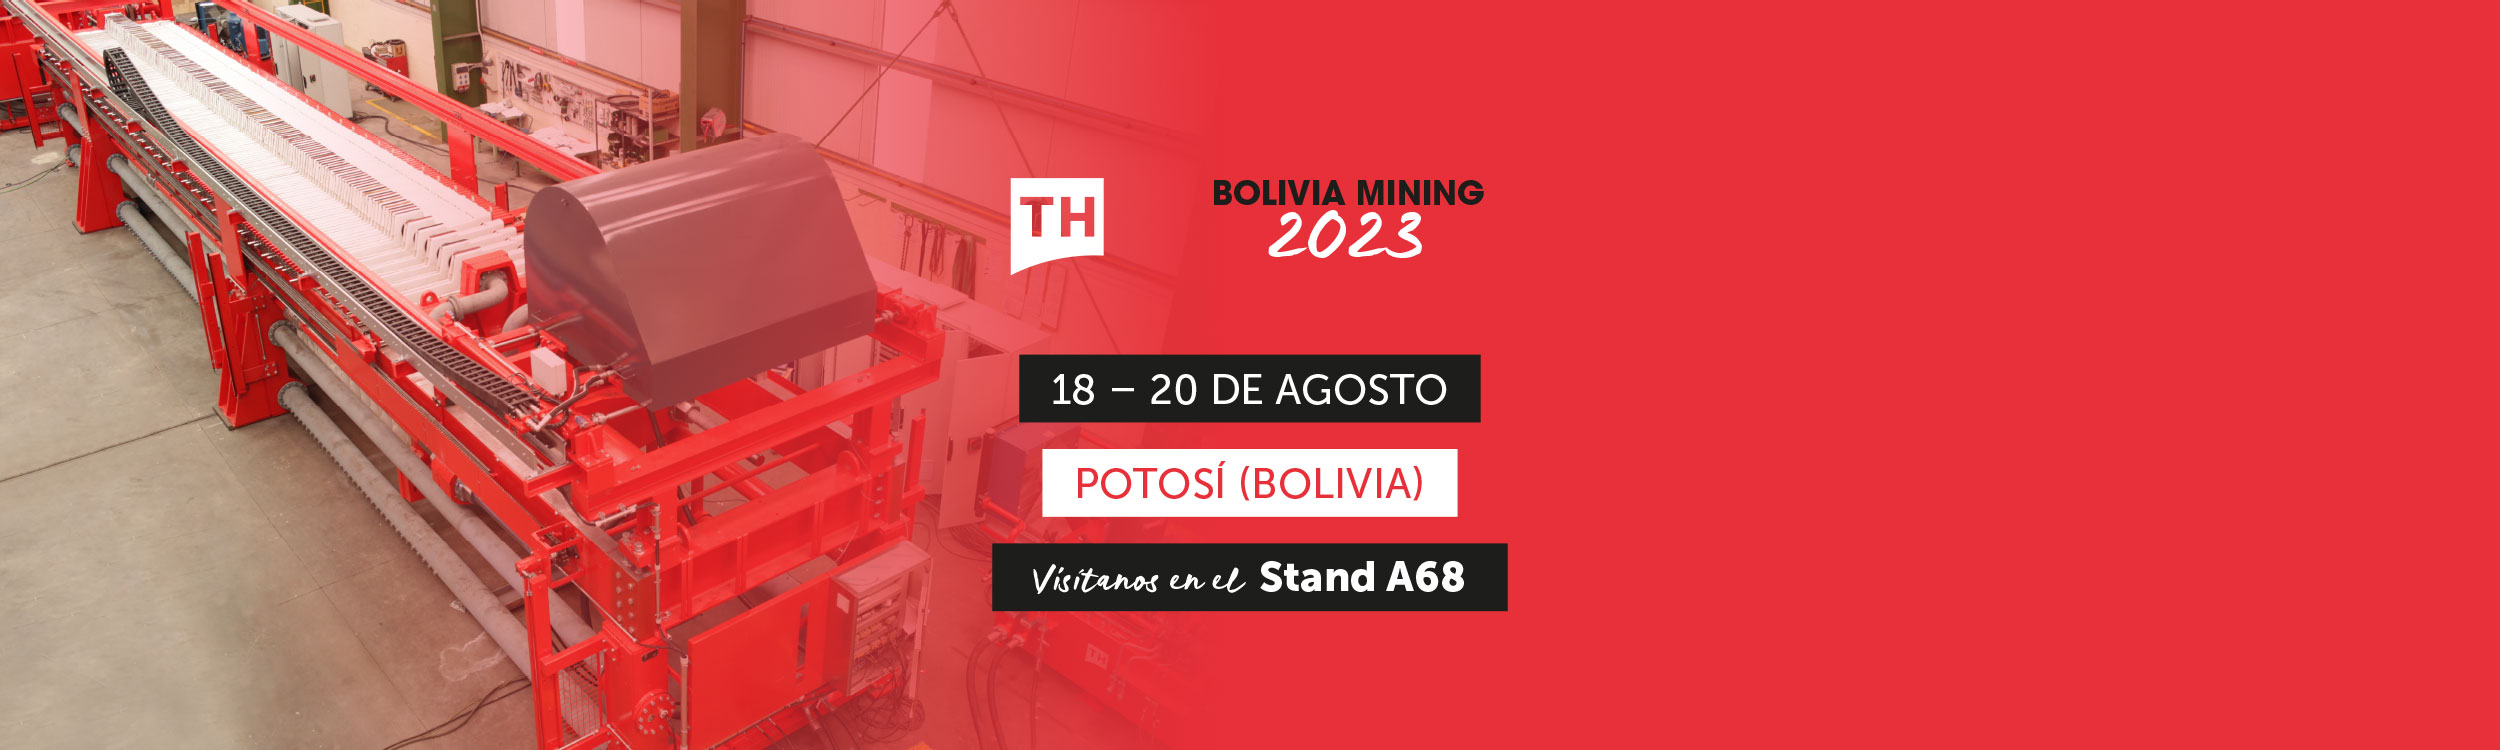 Bolivia Mining 2023